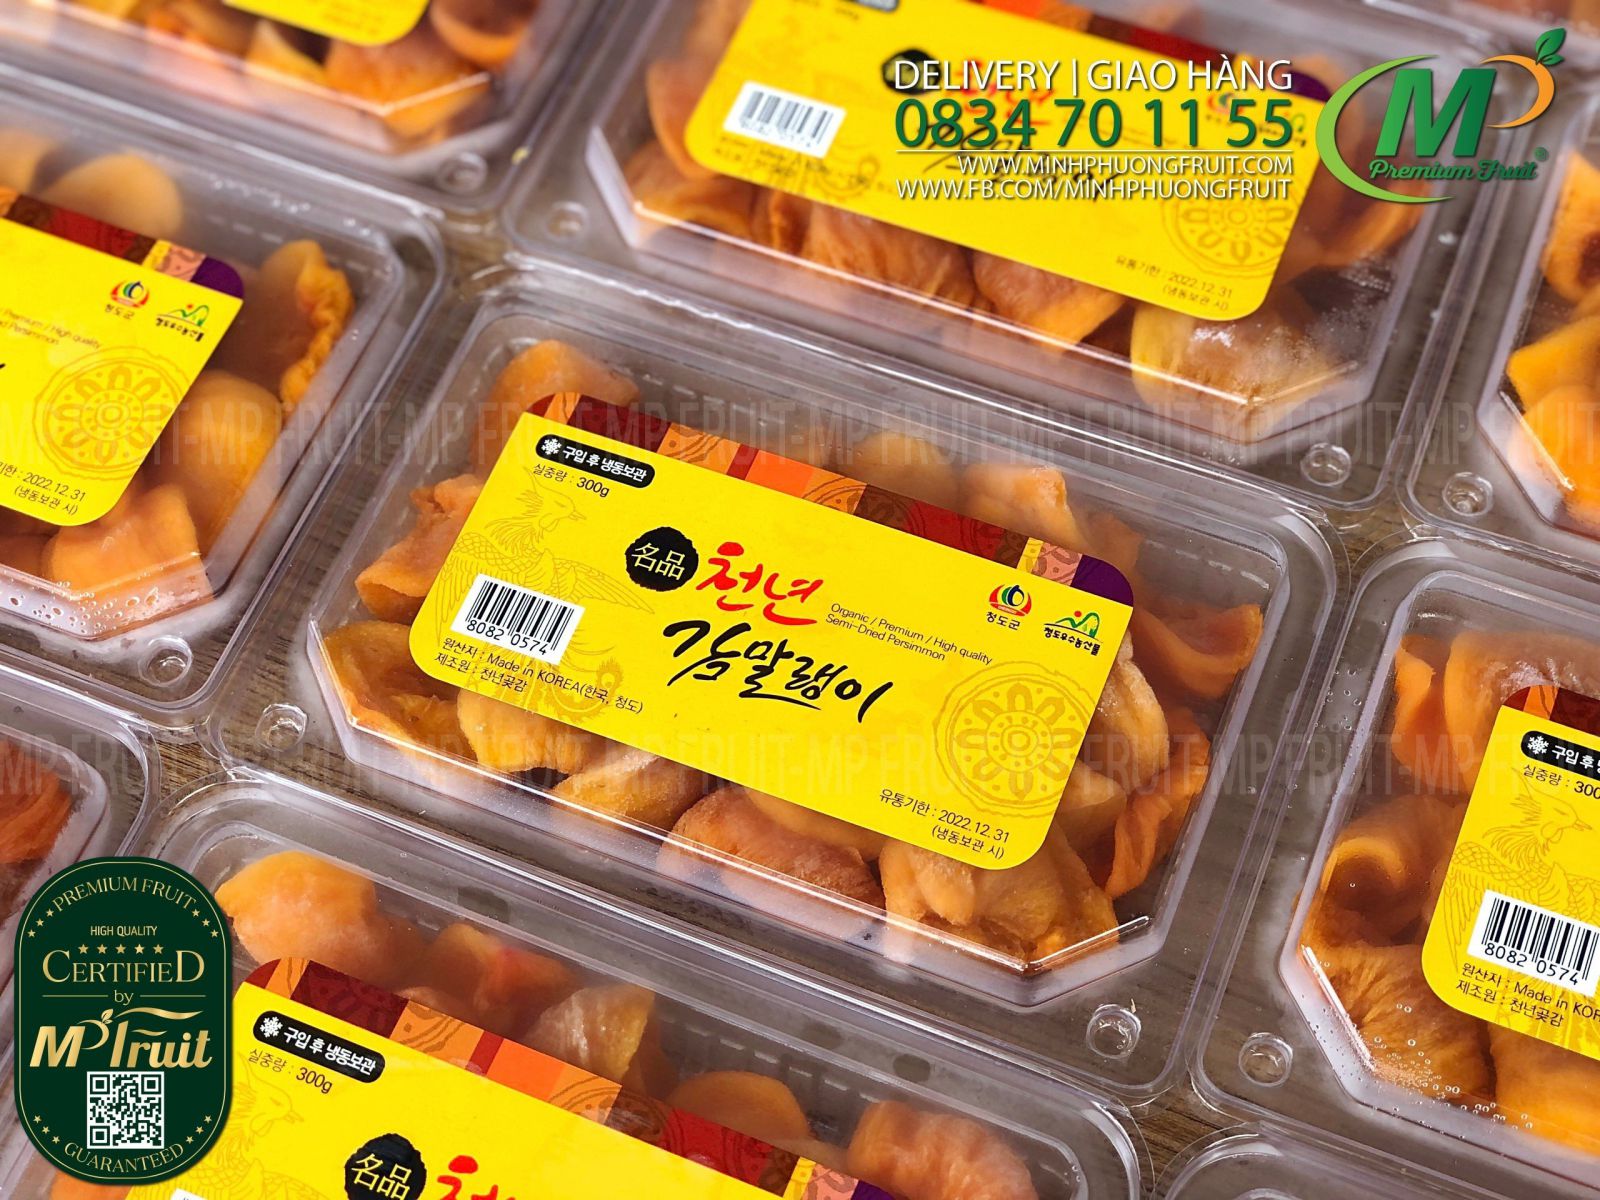 Hồng Dẻo Cắt Lát Hàn Quốc Hộp 300g tại MP Fruit